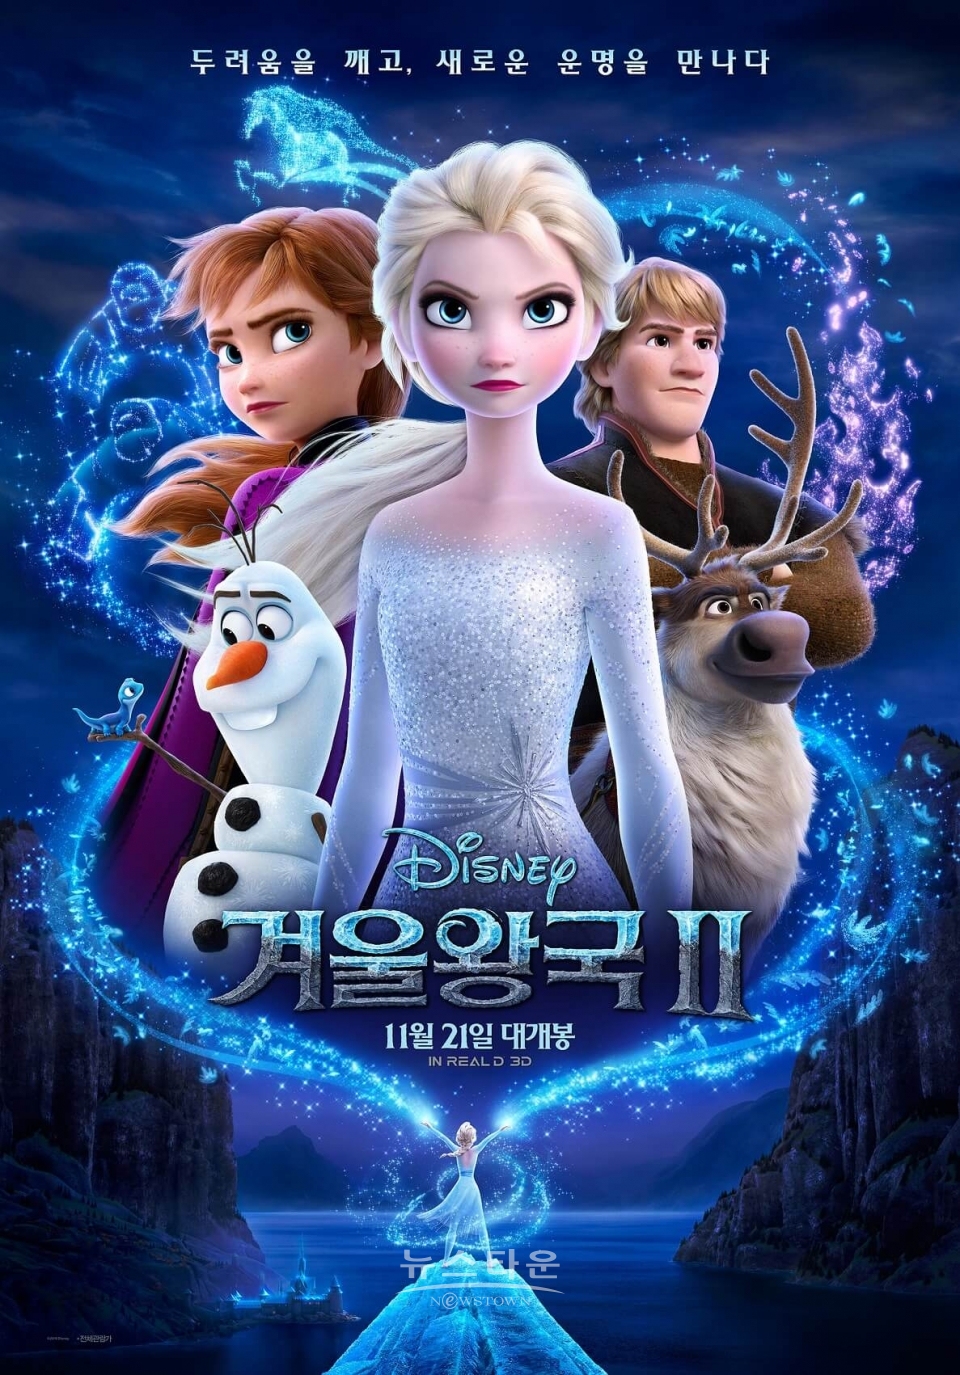 압도적인 예매율! 디즈니의 '겨울왕국 2' 개봉 첫 주 예매 순위 1위 / 고득용기자 ⓒ뉴스타운